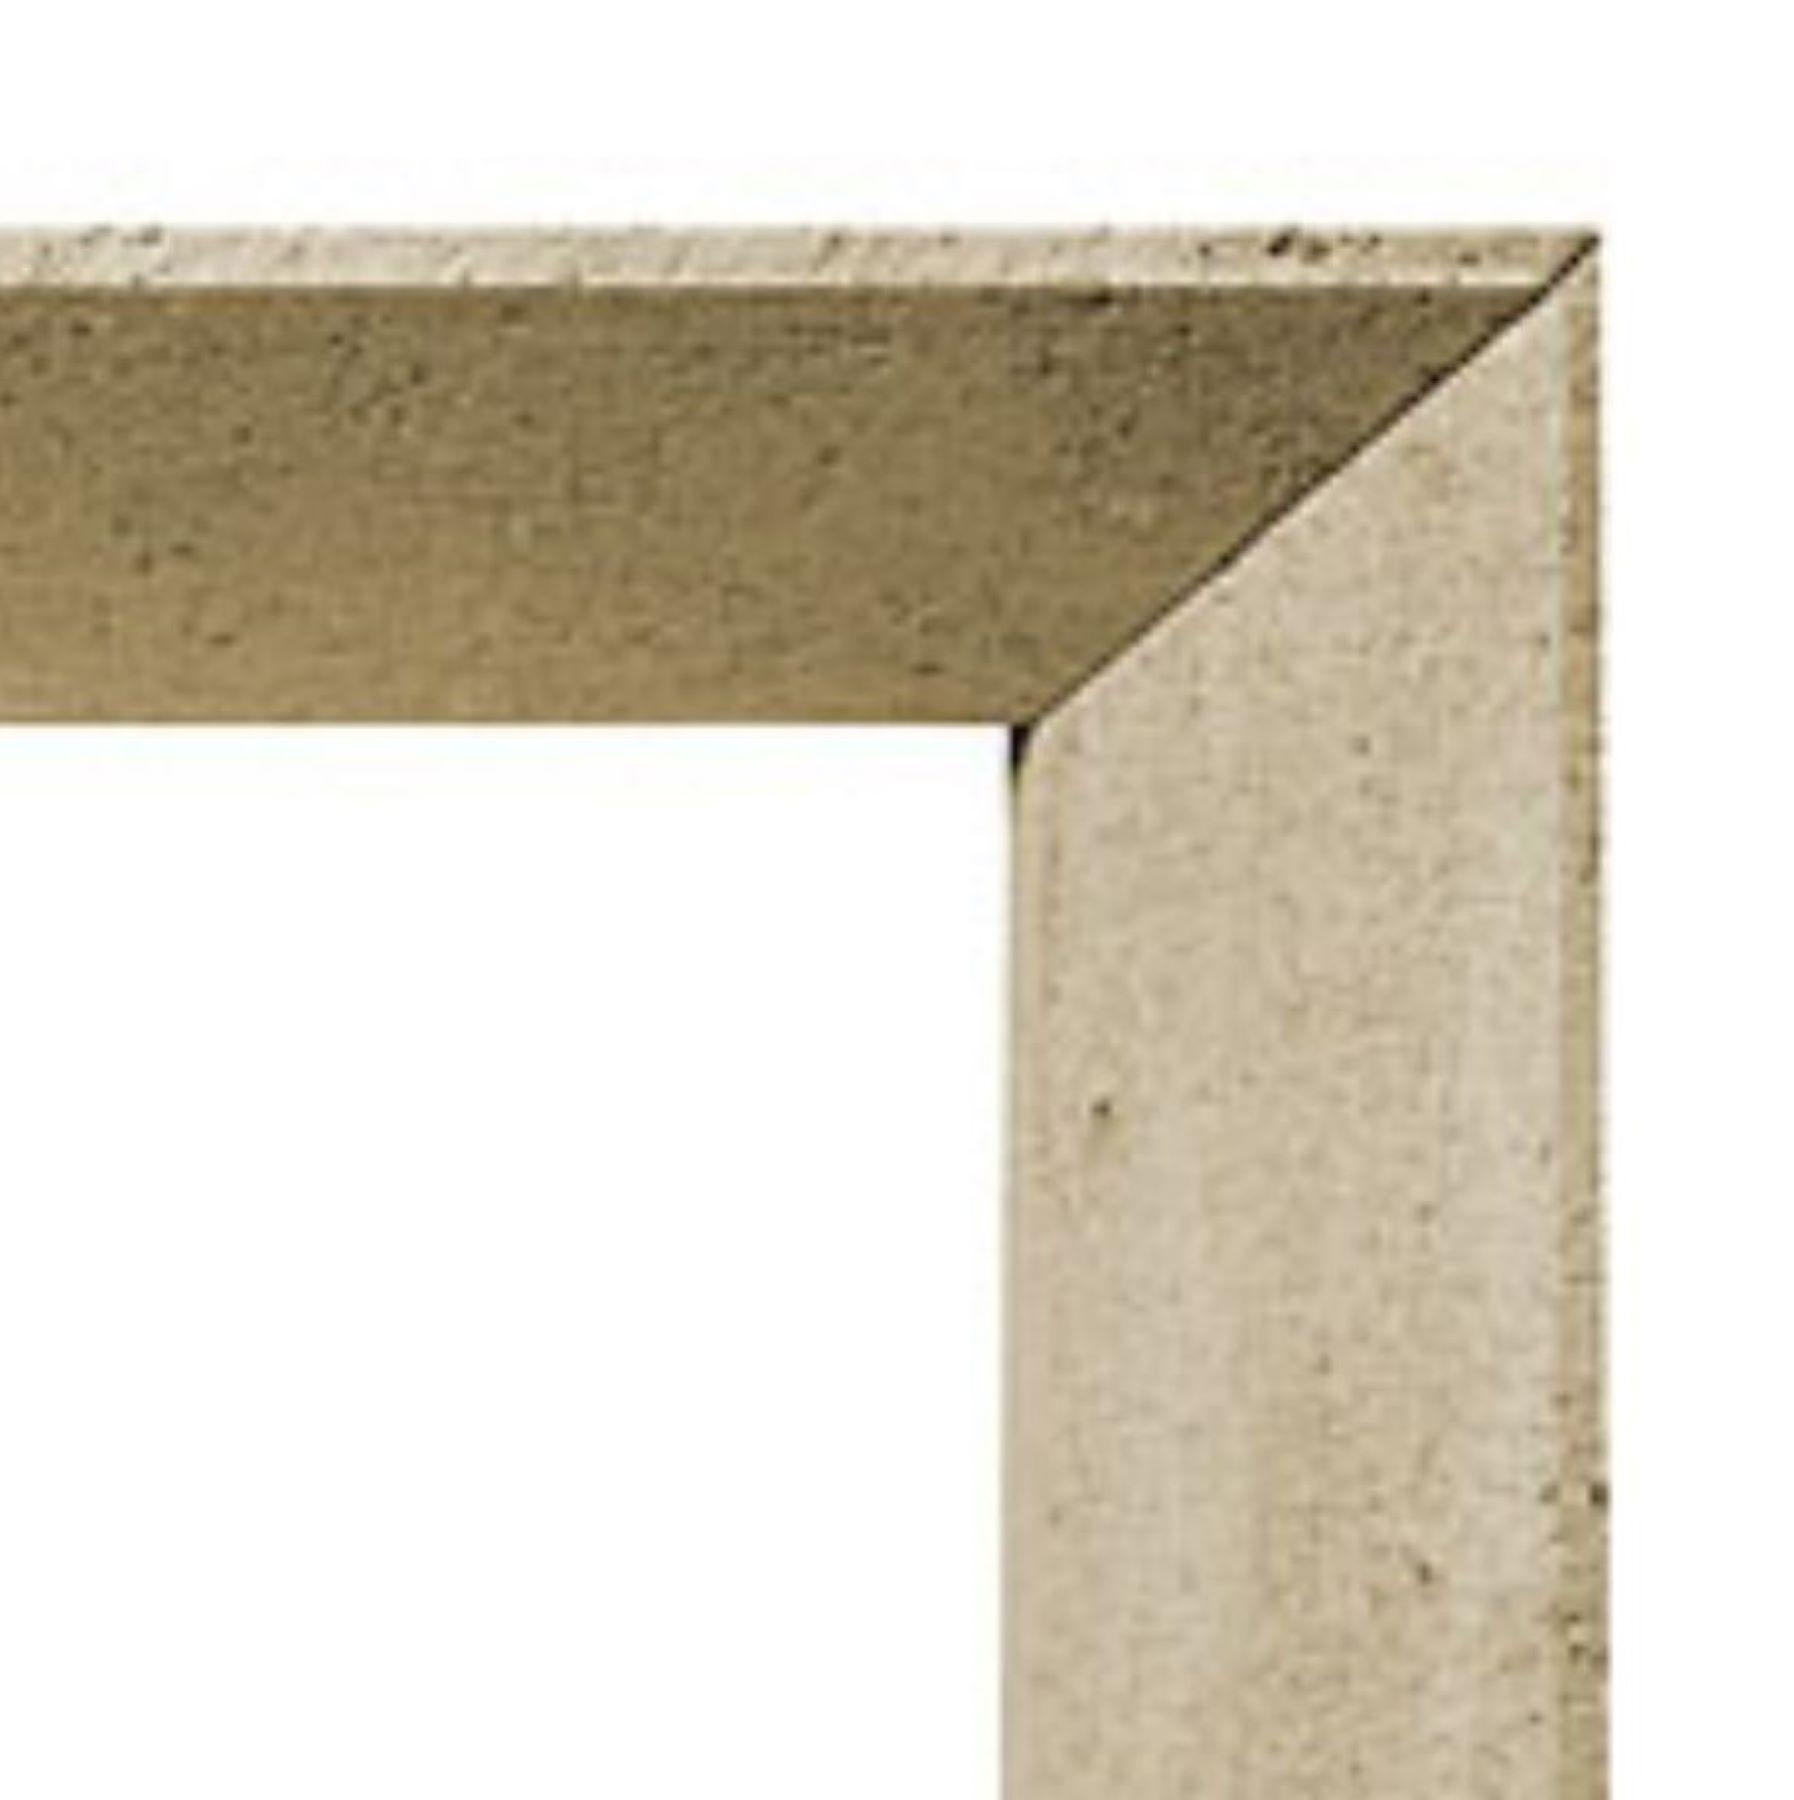 Der Steinkamin Modern zeichnet sich durch schlanke, klare Linien für ein elegantes, sauberes, zeitgenössisches Design aus. Die Beine und der Sturz sind alle zur Öffnung hin abgeschrägt und enden in einem dünnen, flachen Abschnitt, der in den